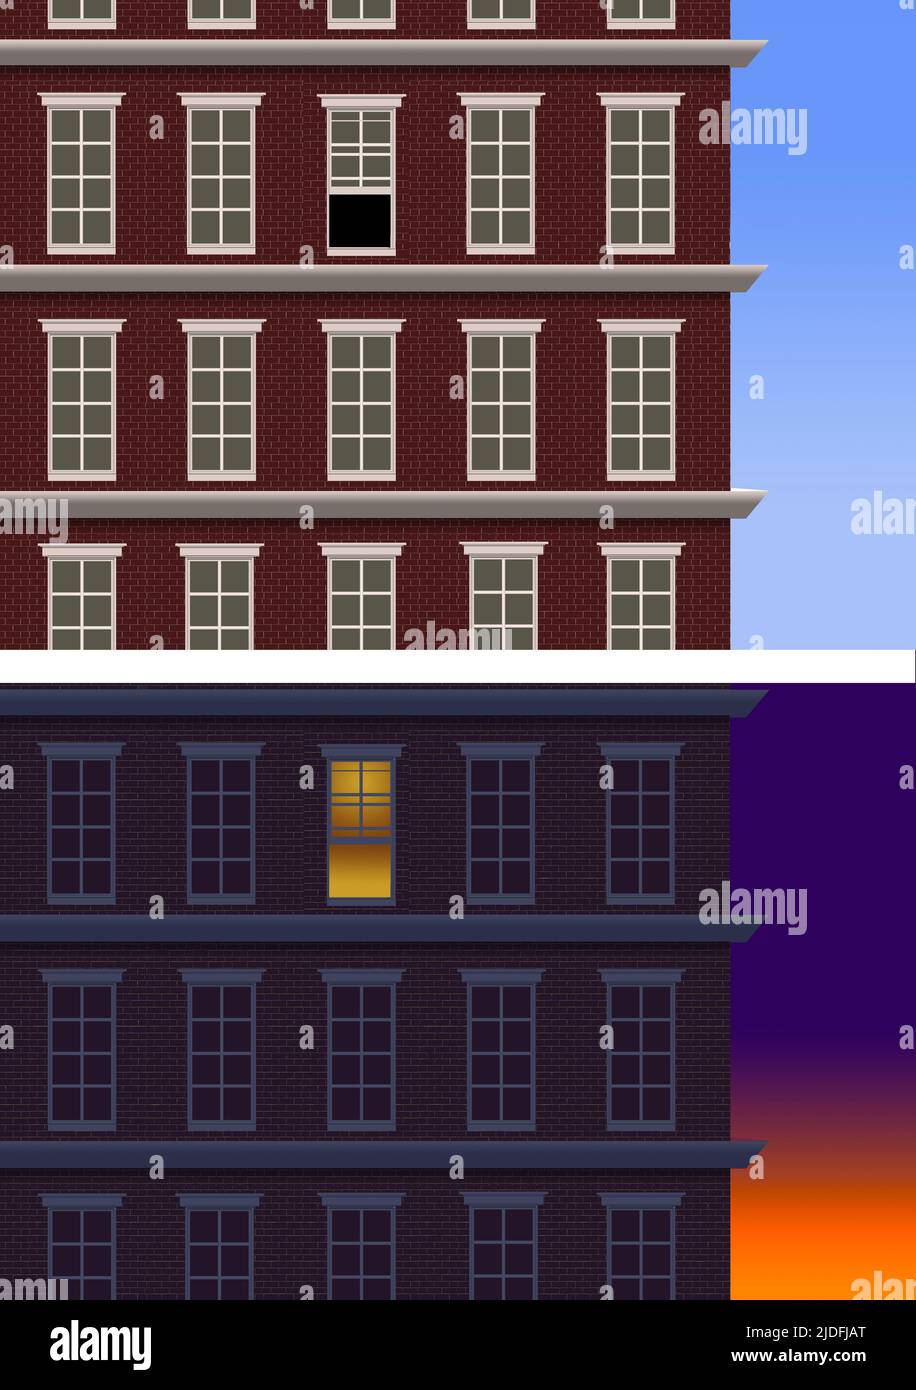 Aquí está un edificio de apartamentos urbano visto a la luz del día y por la noche con una ventana abierta durante el día y luces encendidas vistas a través de una ventana por la noche. Esto Foto de stock